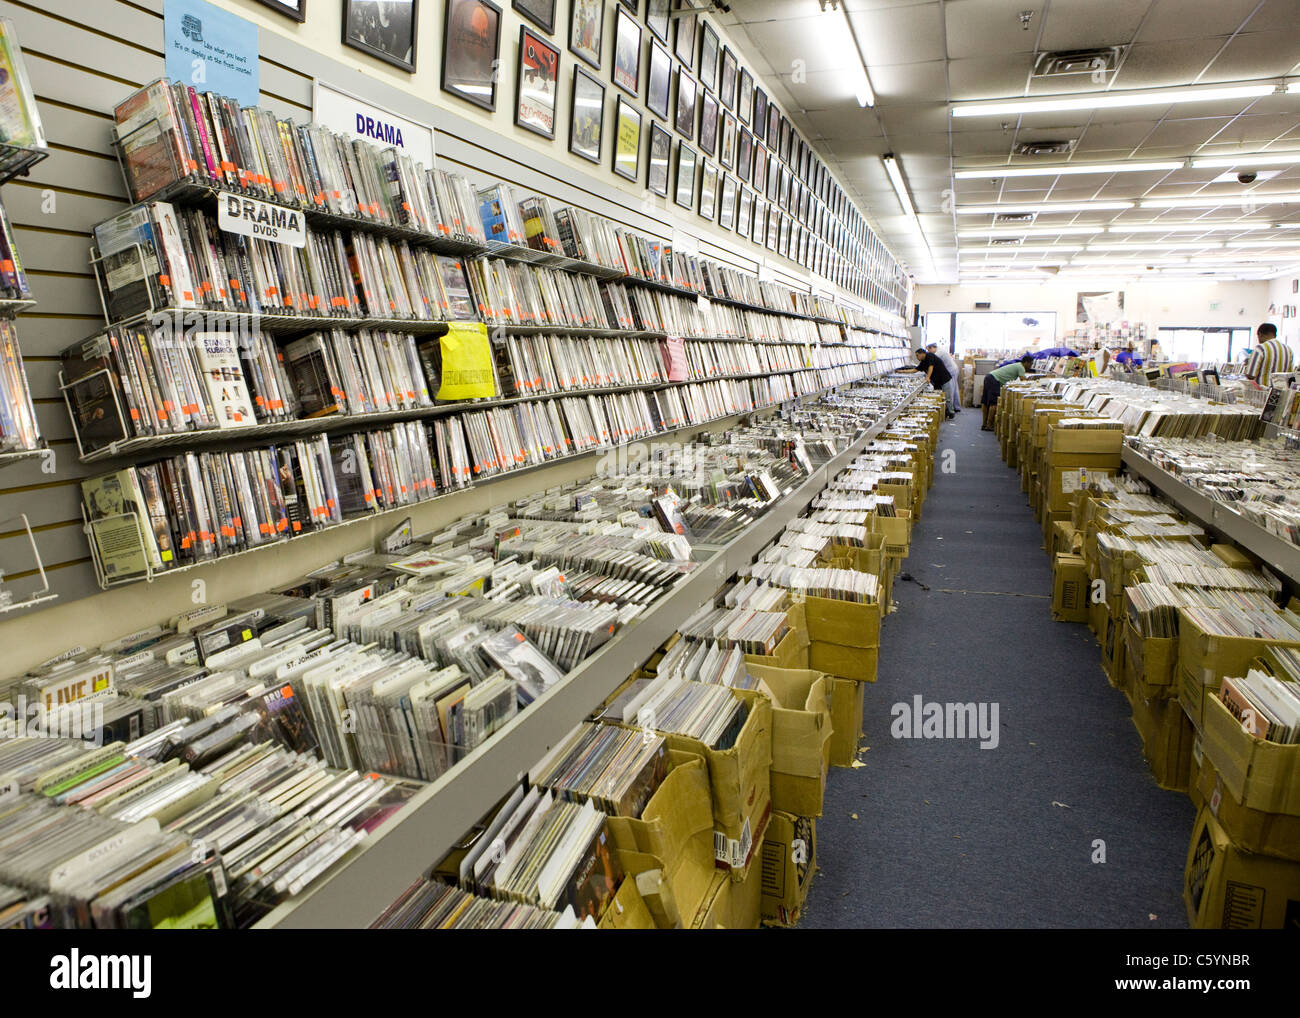 Utiliser des DVD, CD, vinyles et les murs et les étagères dans un magasin de musique Banque D'Images